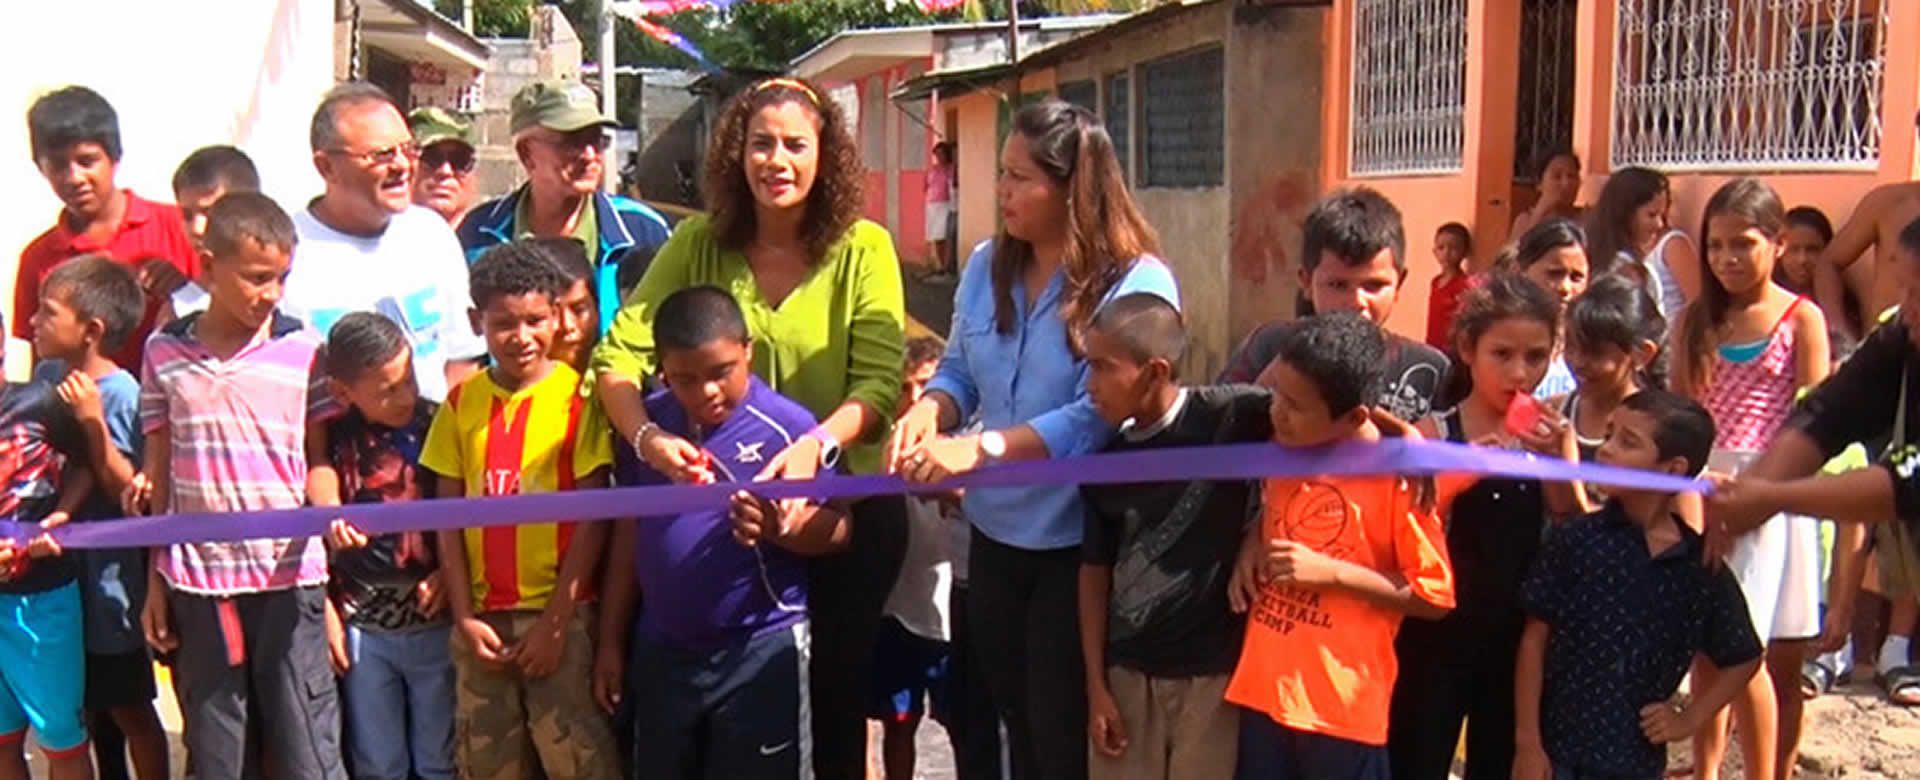 Alcaldía de Managua inaugura calle y entrega otra vivienda digna